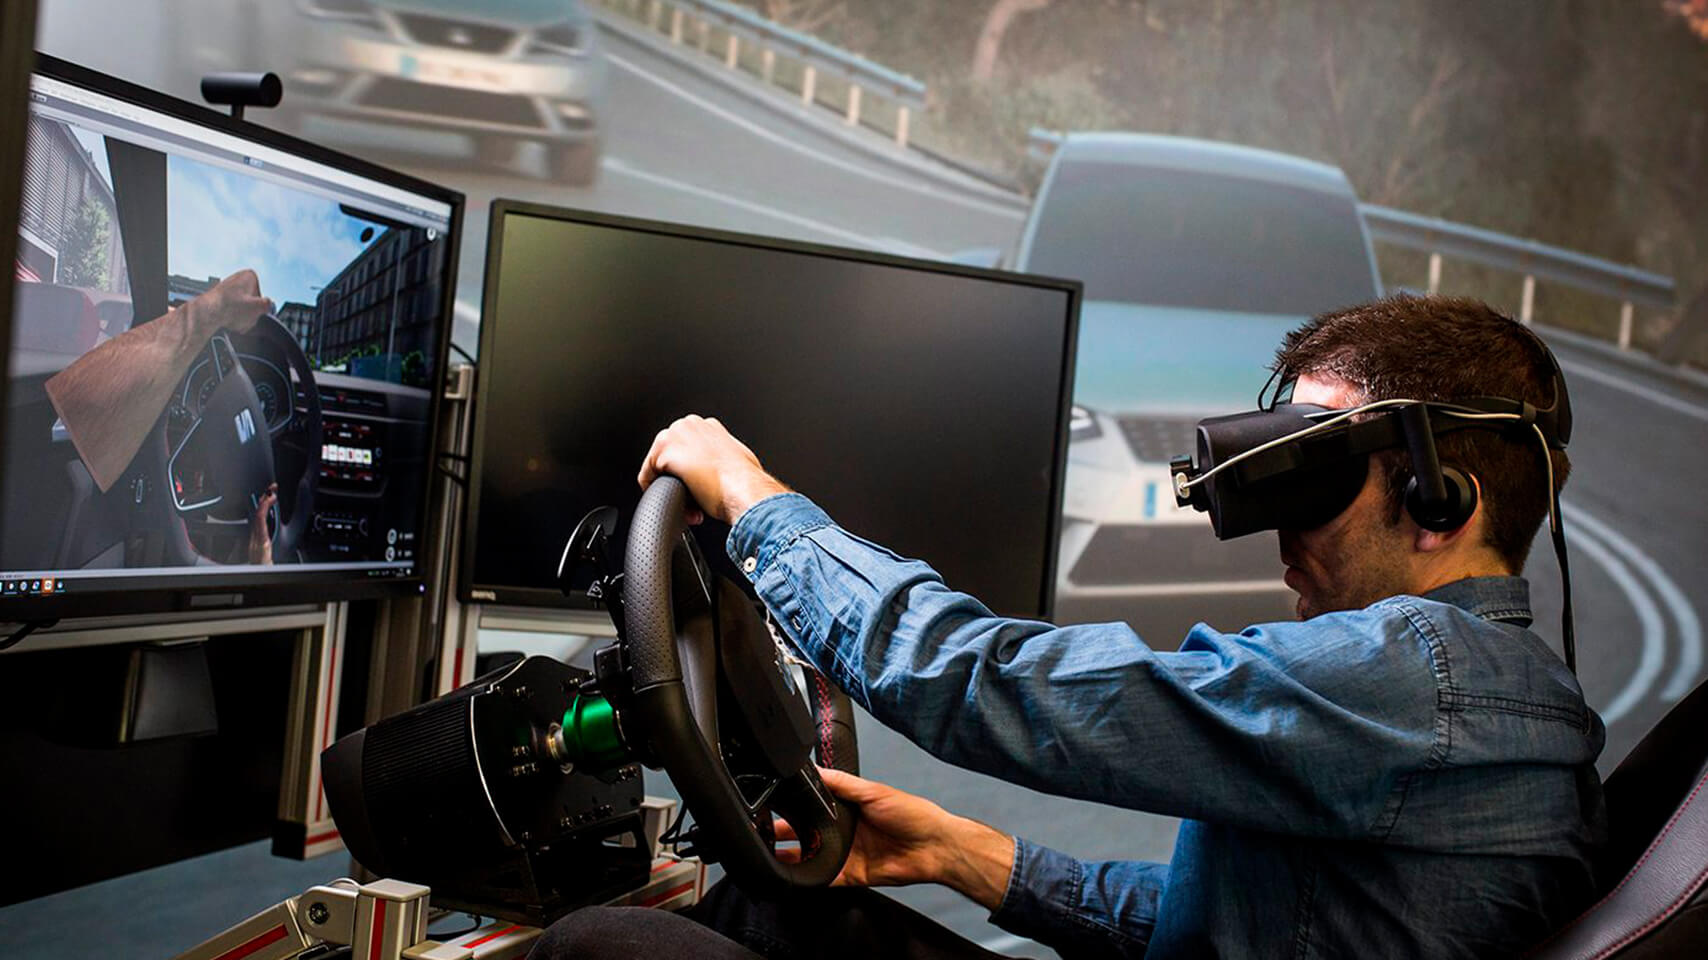 Comment la réalité virtuelle est-elle appliquée chez SEAT 4